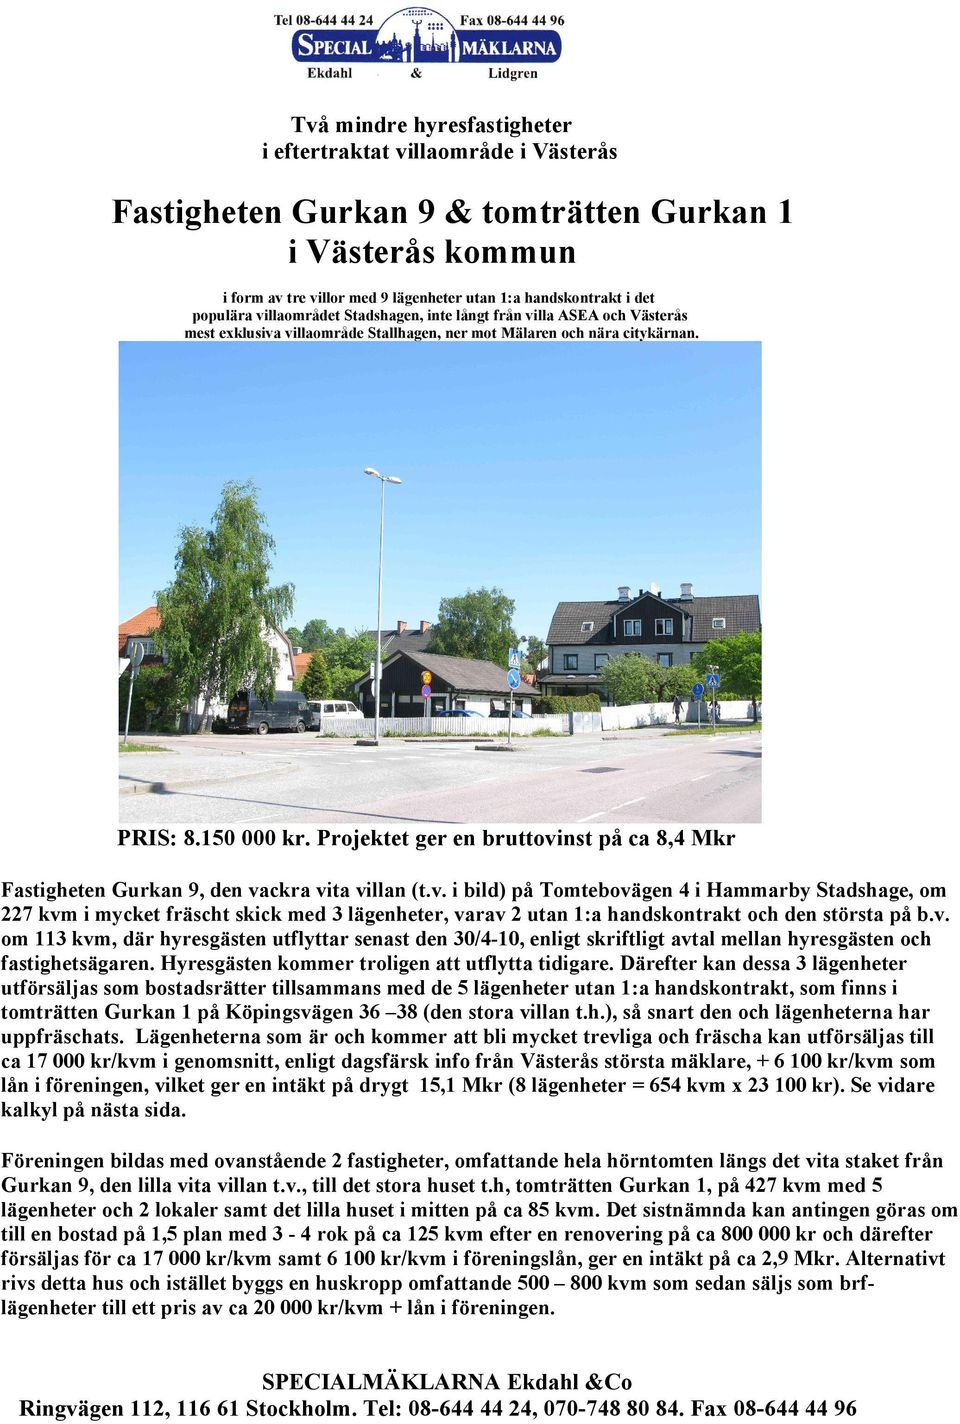 Projektet ger en bruttovinst på ca 8,4 Mkr Fastigheten Gurkan 9, den vackra vita villan (t.v. i bild) på Tomtebovägen 4 i Hammarby Stadshage, om 227 kvm i mycket fräscht skick med 3 lägenheter, varav 2 utan 1:a handskontrakt och den största på b.